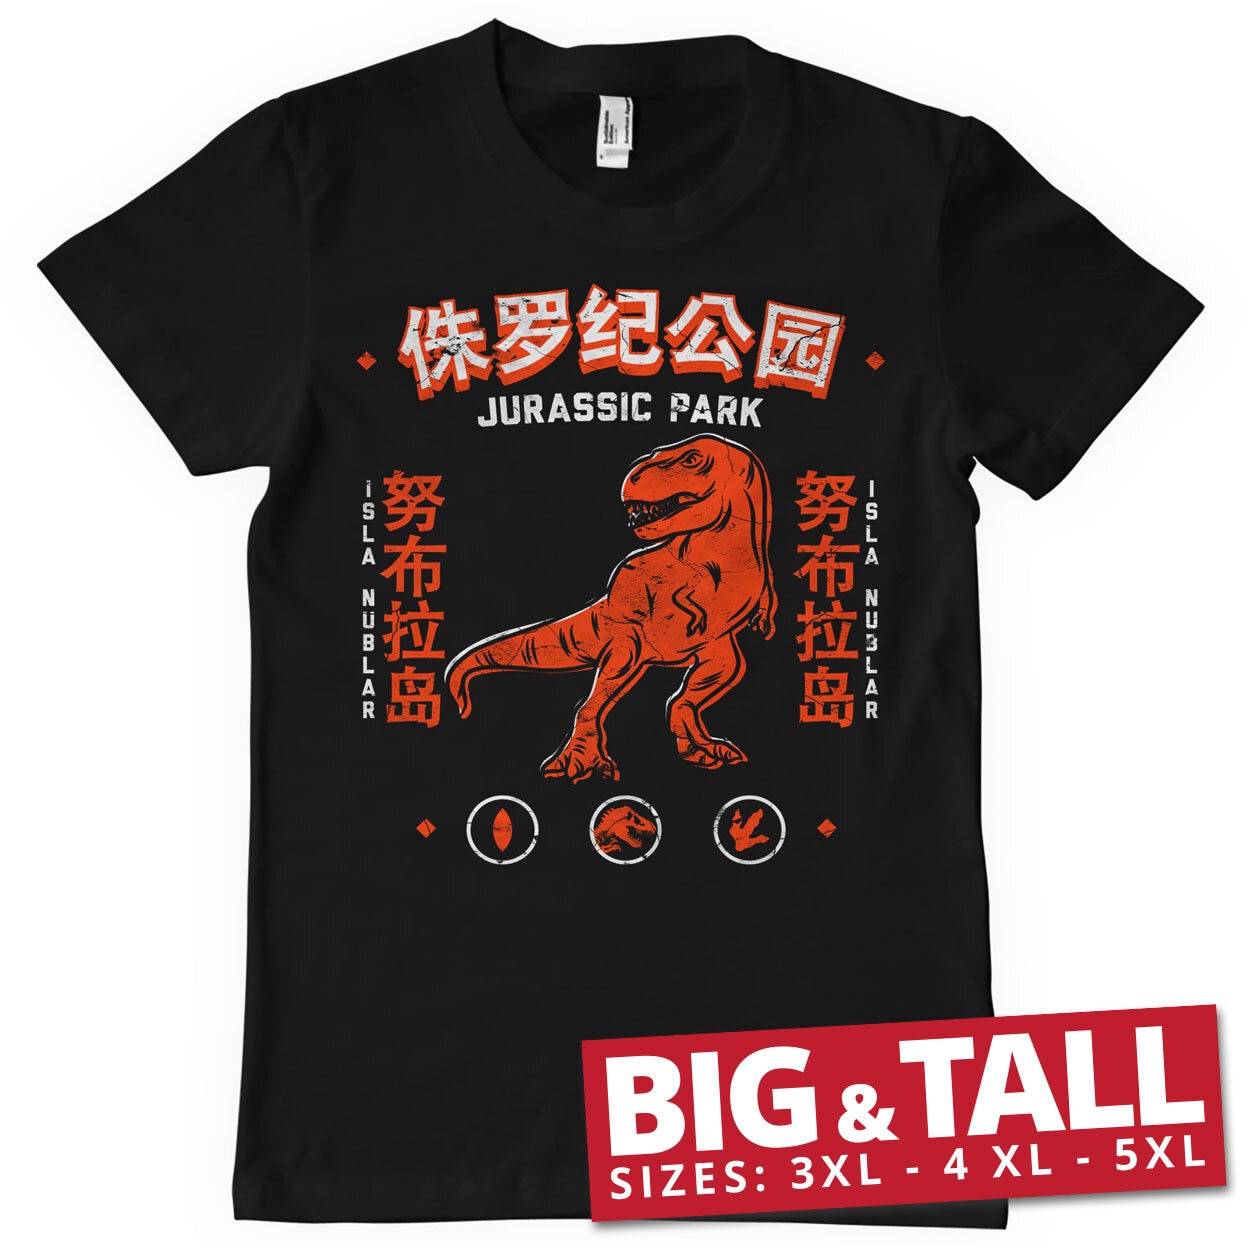 Jurassic Park - Isla Nublar Big & Tall T-Shirt